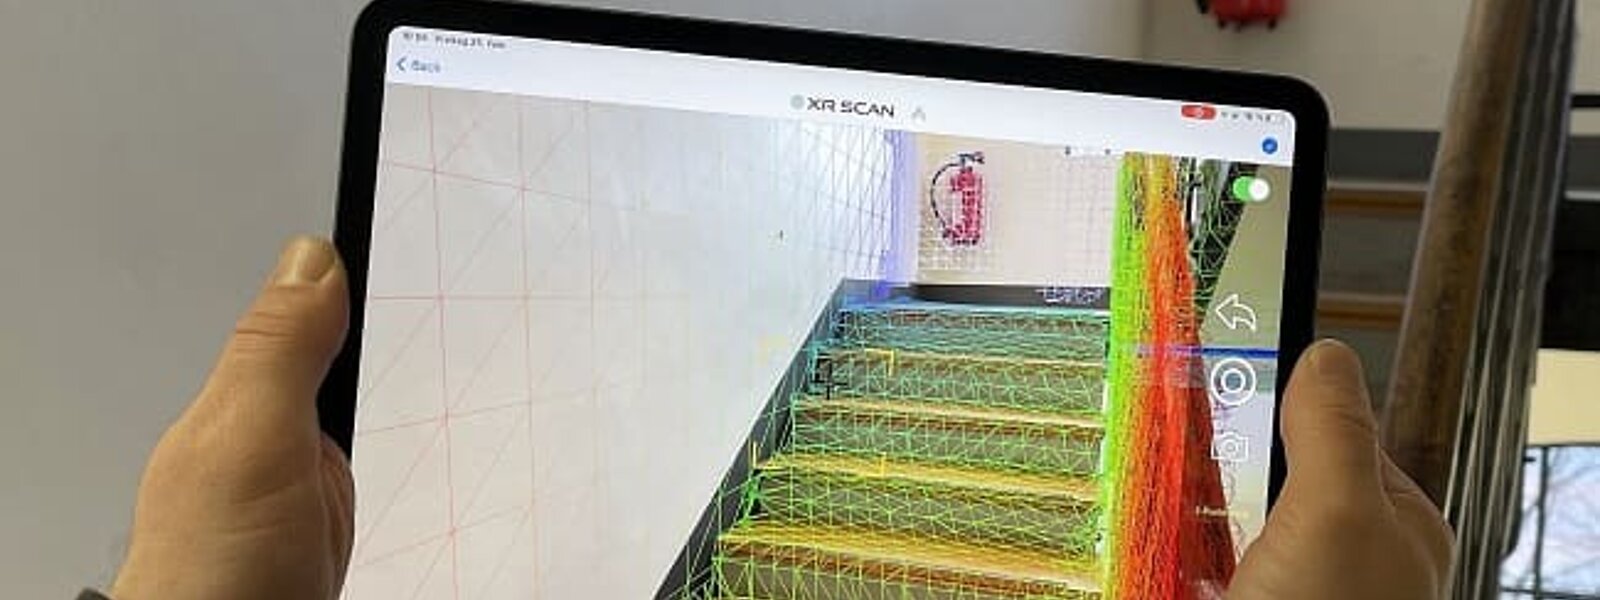 Mesure numérique d'un escalier avec XR Scan